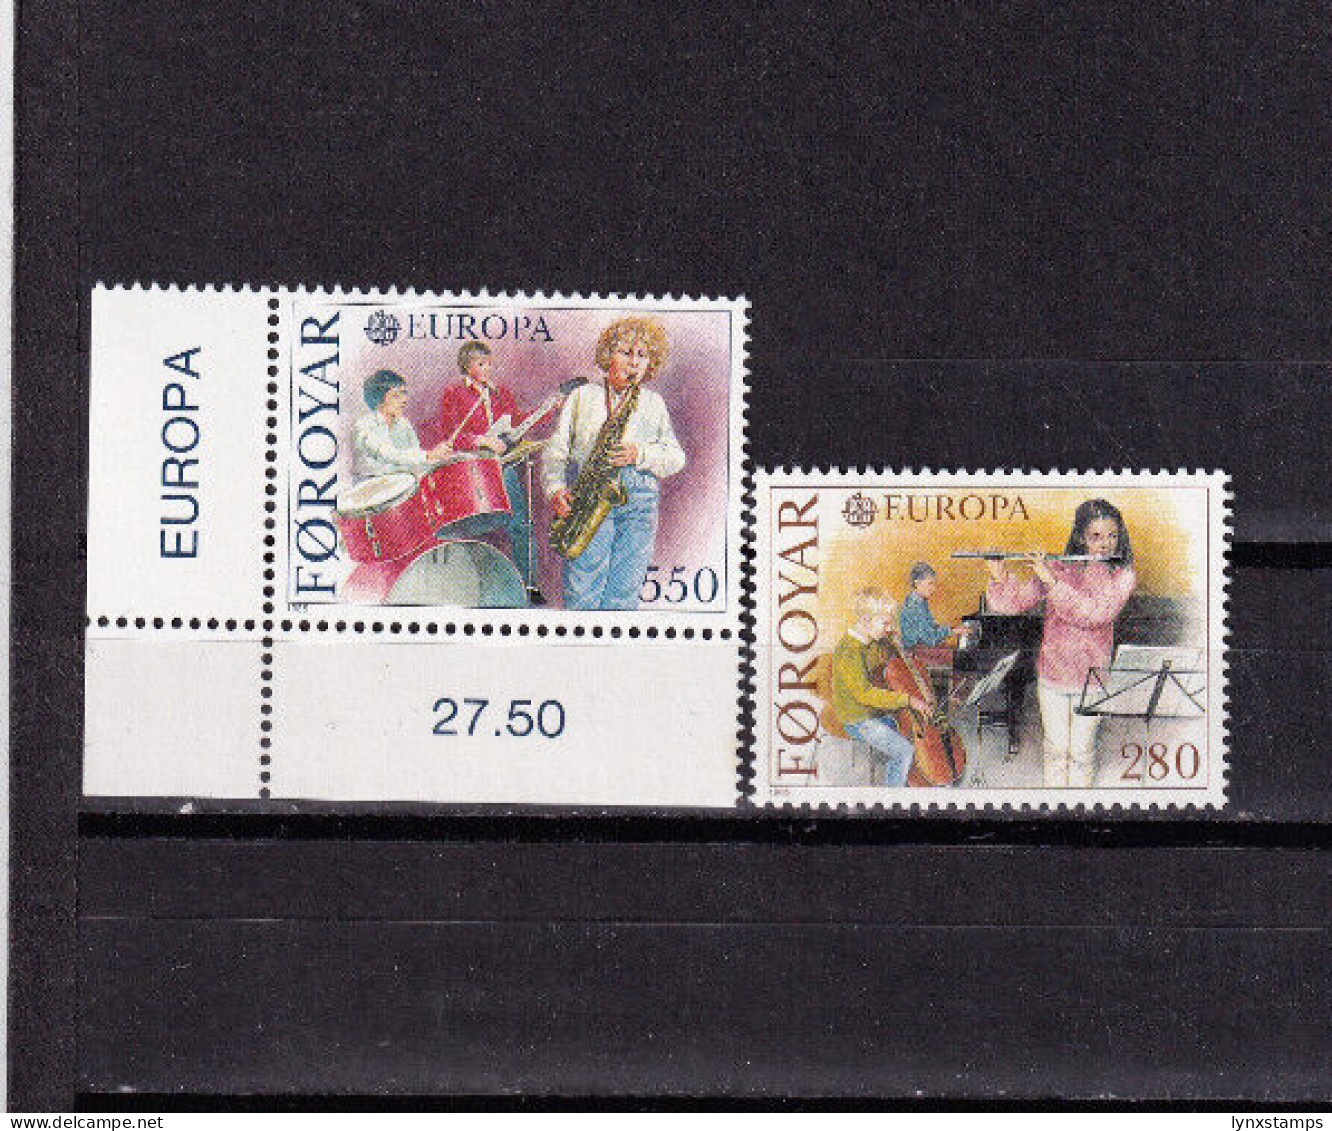 LI03 Faroe Islands 1985 EUROPA Stamps - European Music Year Mint Stamps - Faroe Islands